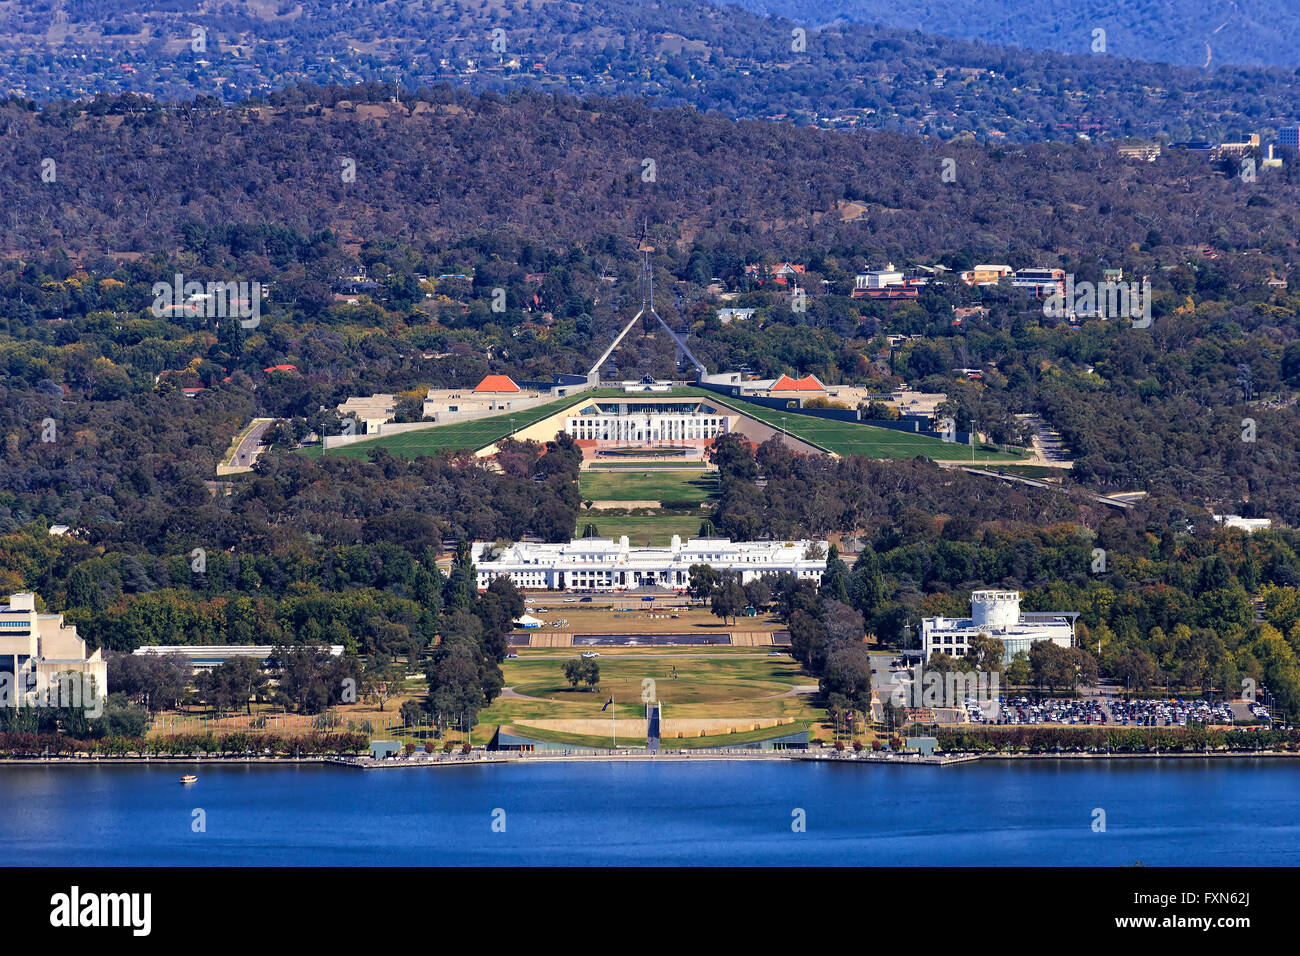 La maison du parlement national australien sur la colline du Capitole à Canberra par un parlement blanc et le lac Burley Griffin à partir de ci-dessus. Banque D'Images